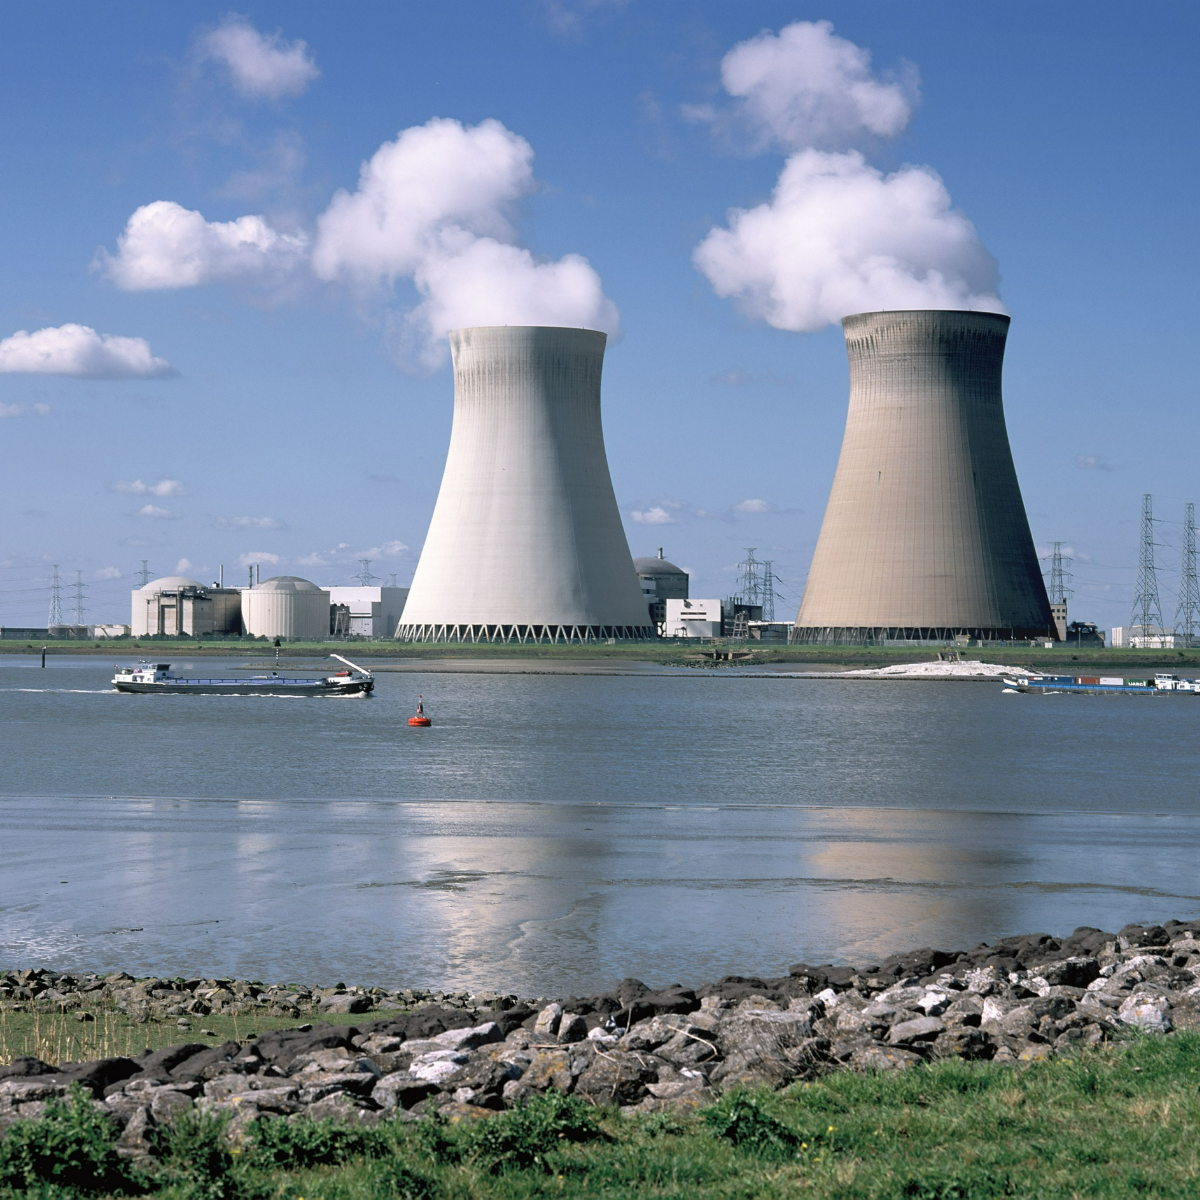 Centrales nucléaires